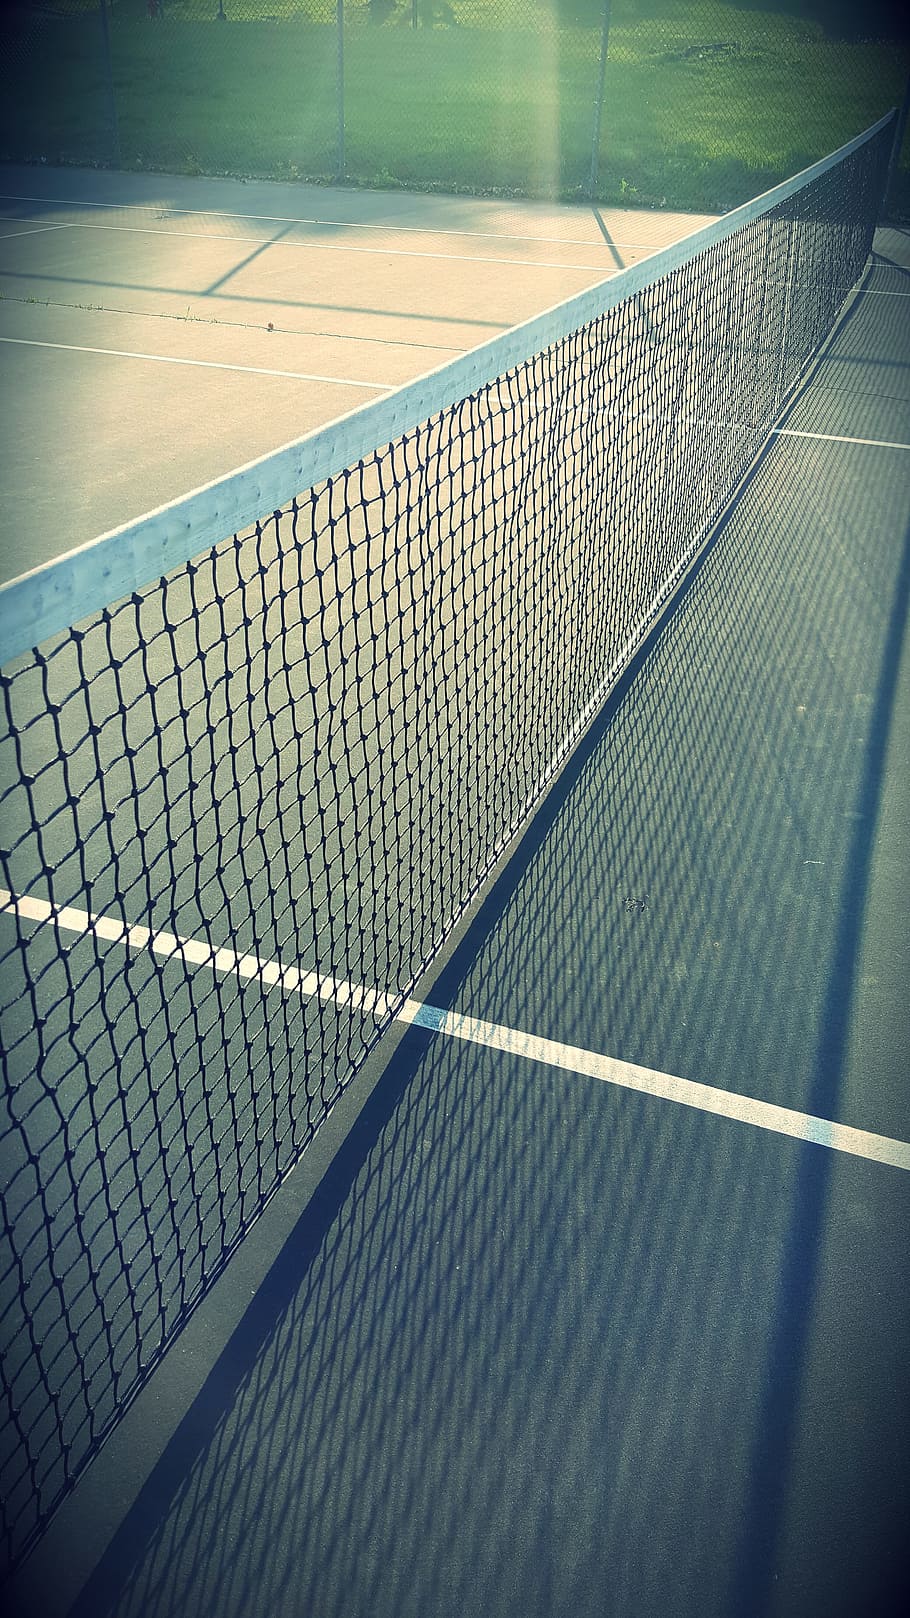 White Tennis Net on a Ground, court, sport, tennis court, net - sports equipment, HD wallpaper